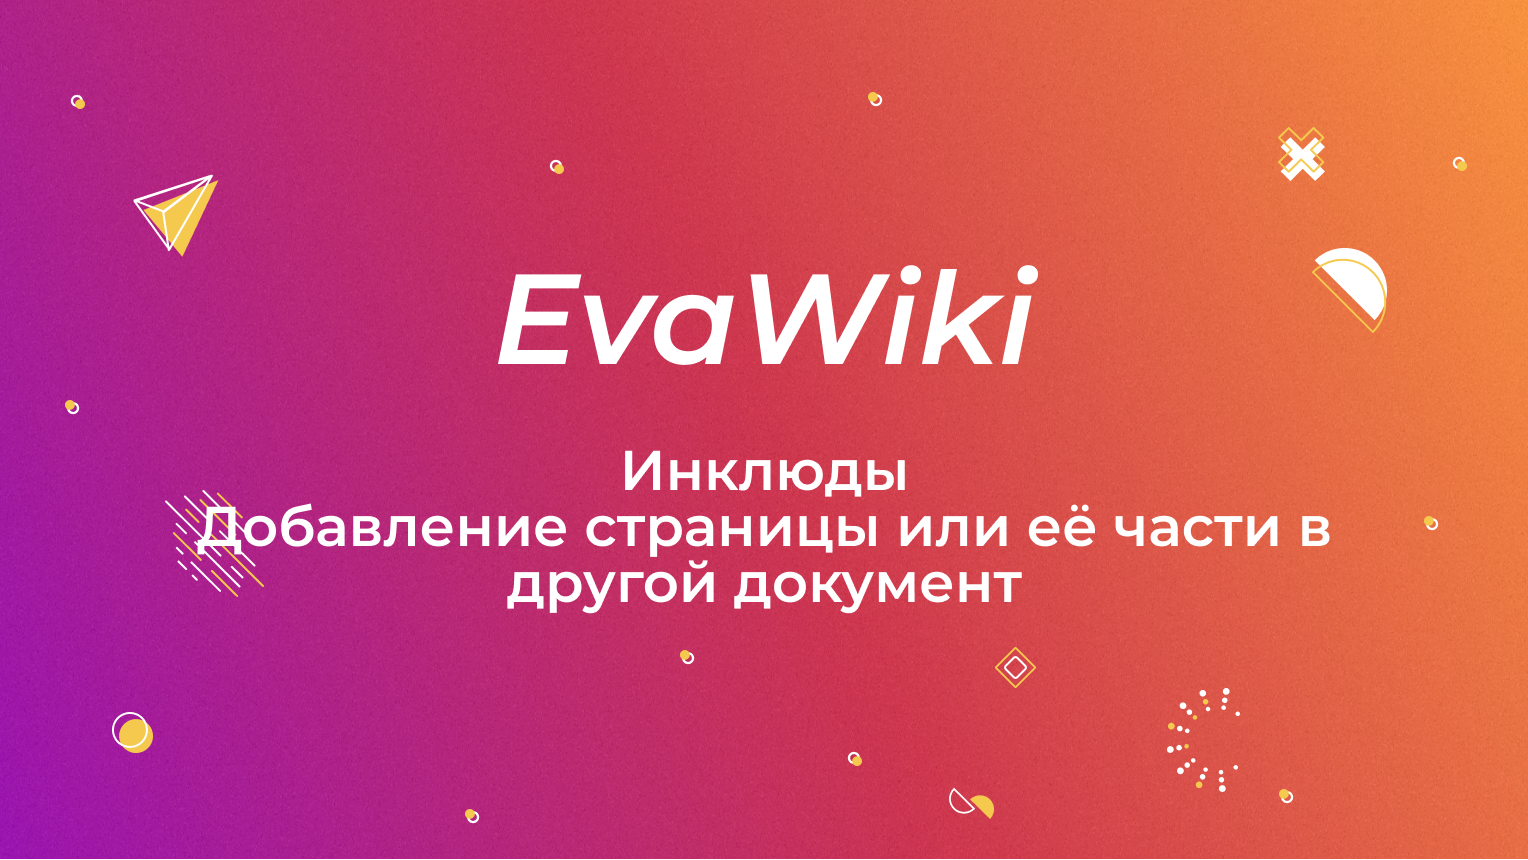 Связывание страниц (Include) в EvaWiki